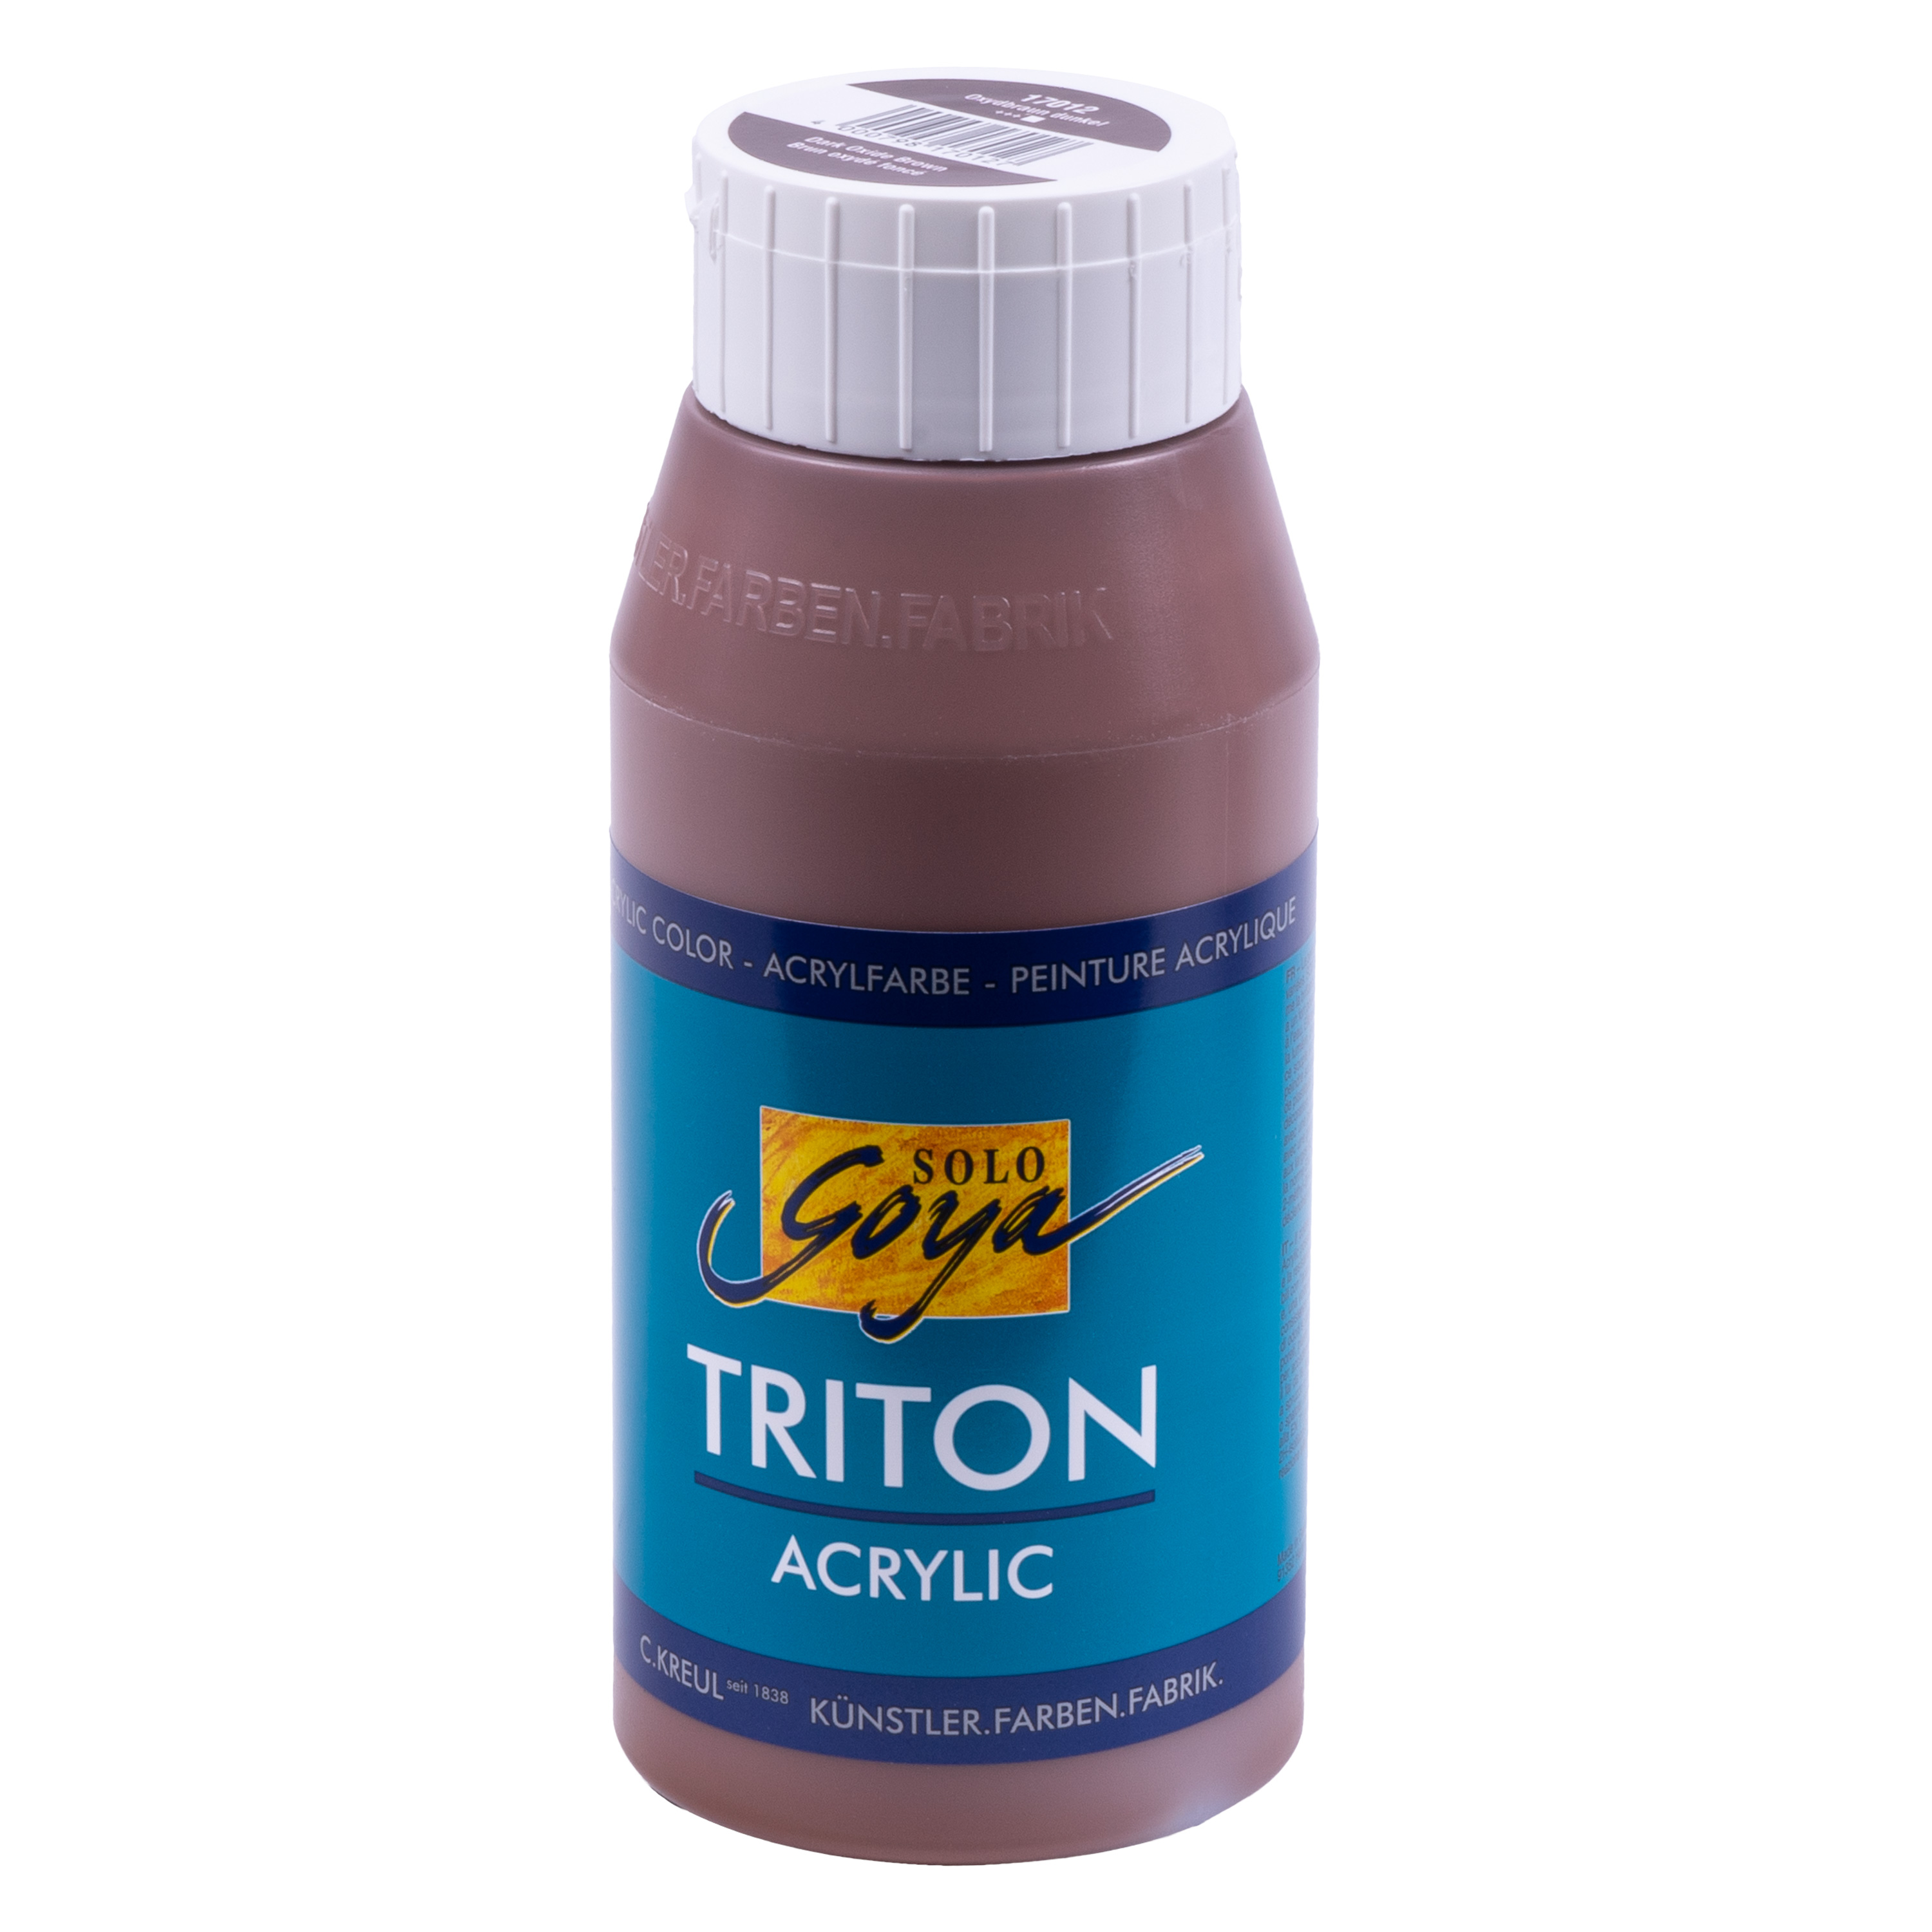 SOLO GOYA Triton Acrylfarbe, oxydbraun dunkel, 750 ml